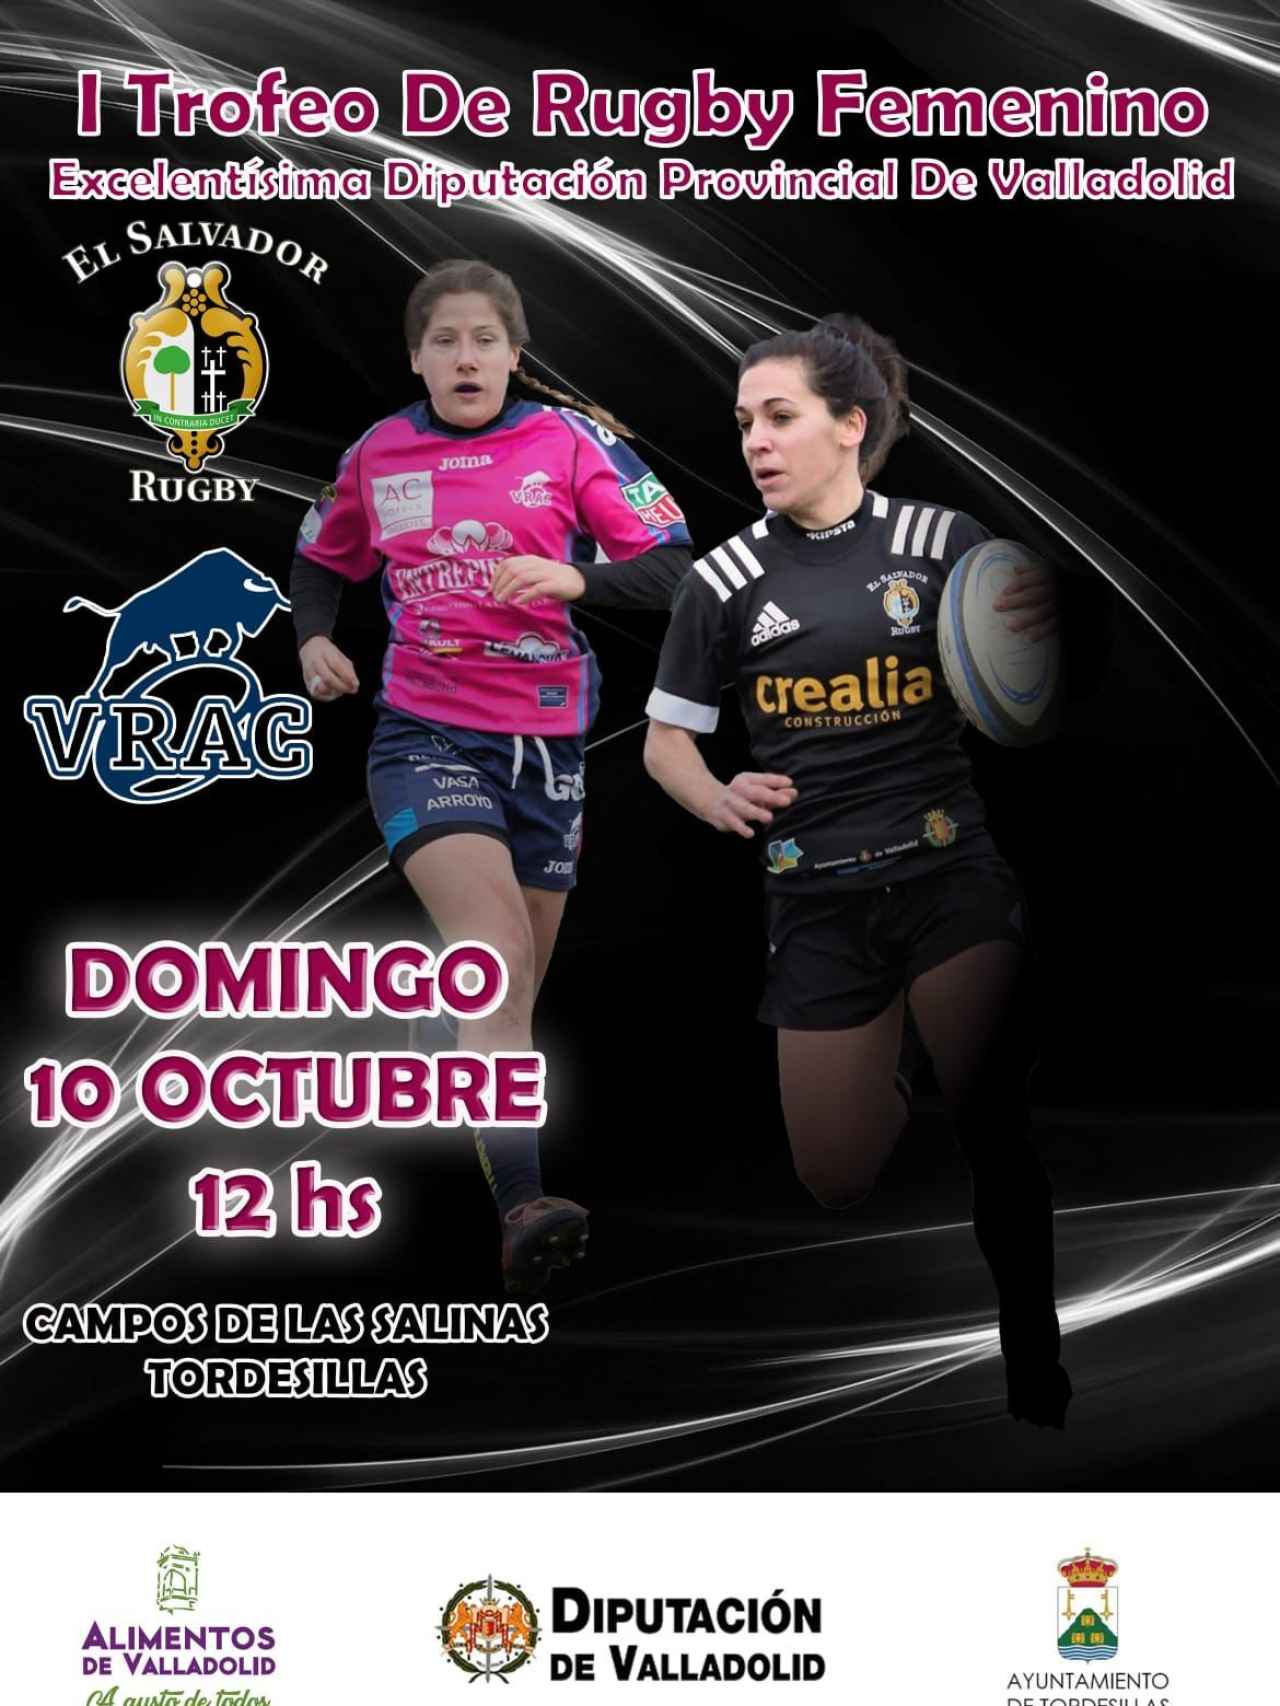 Cartel sobre el I Torneo de rugby femenino de la Diputación de Valladolid